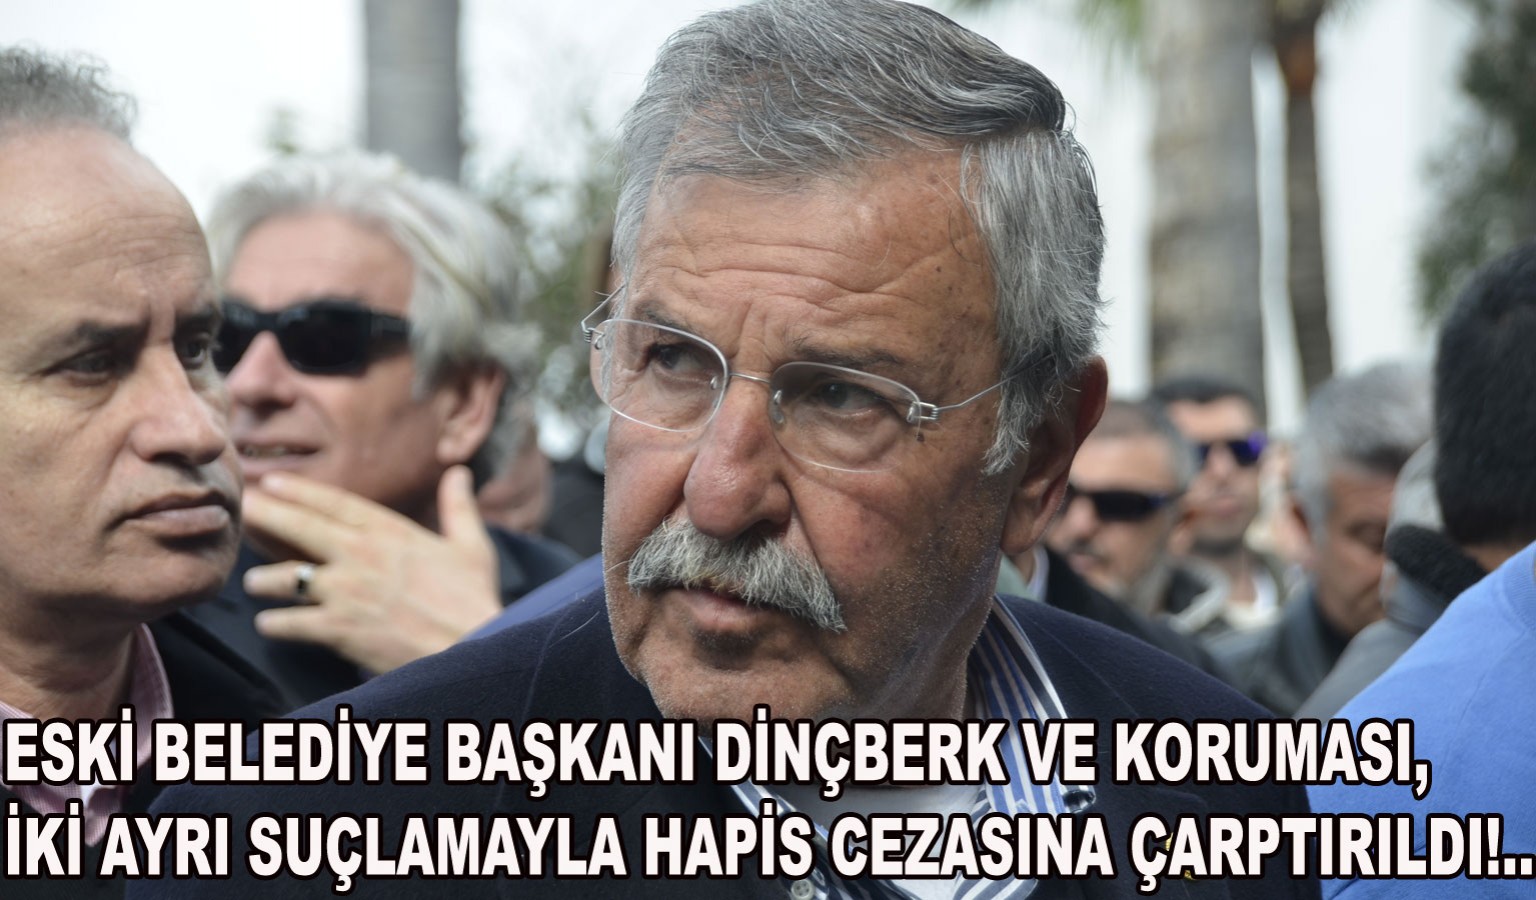 MEHMET DİNÇBERK'E HAPİS CEZASI!..